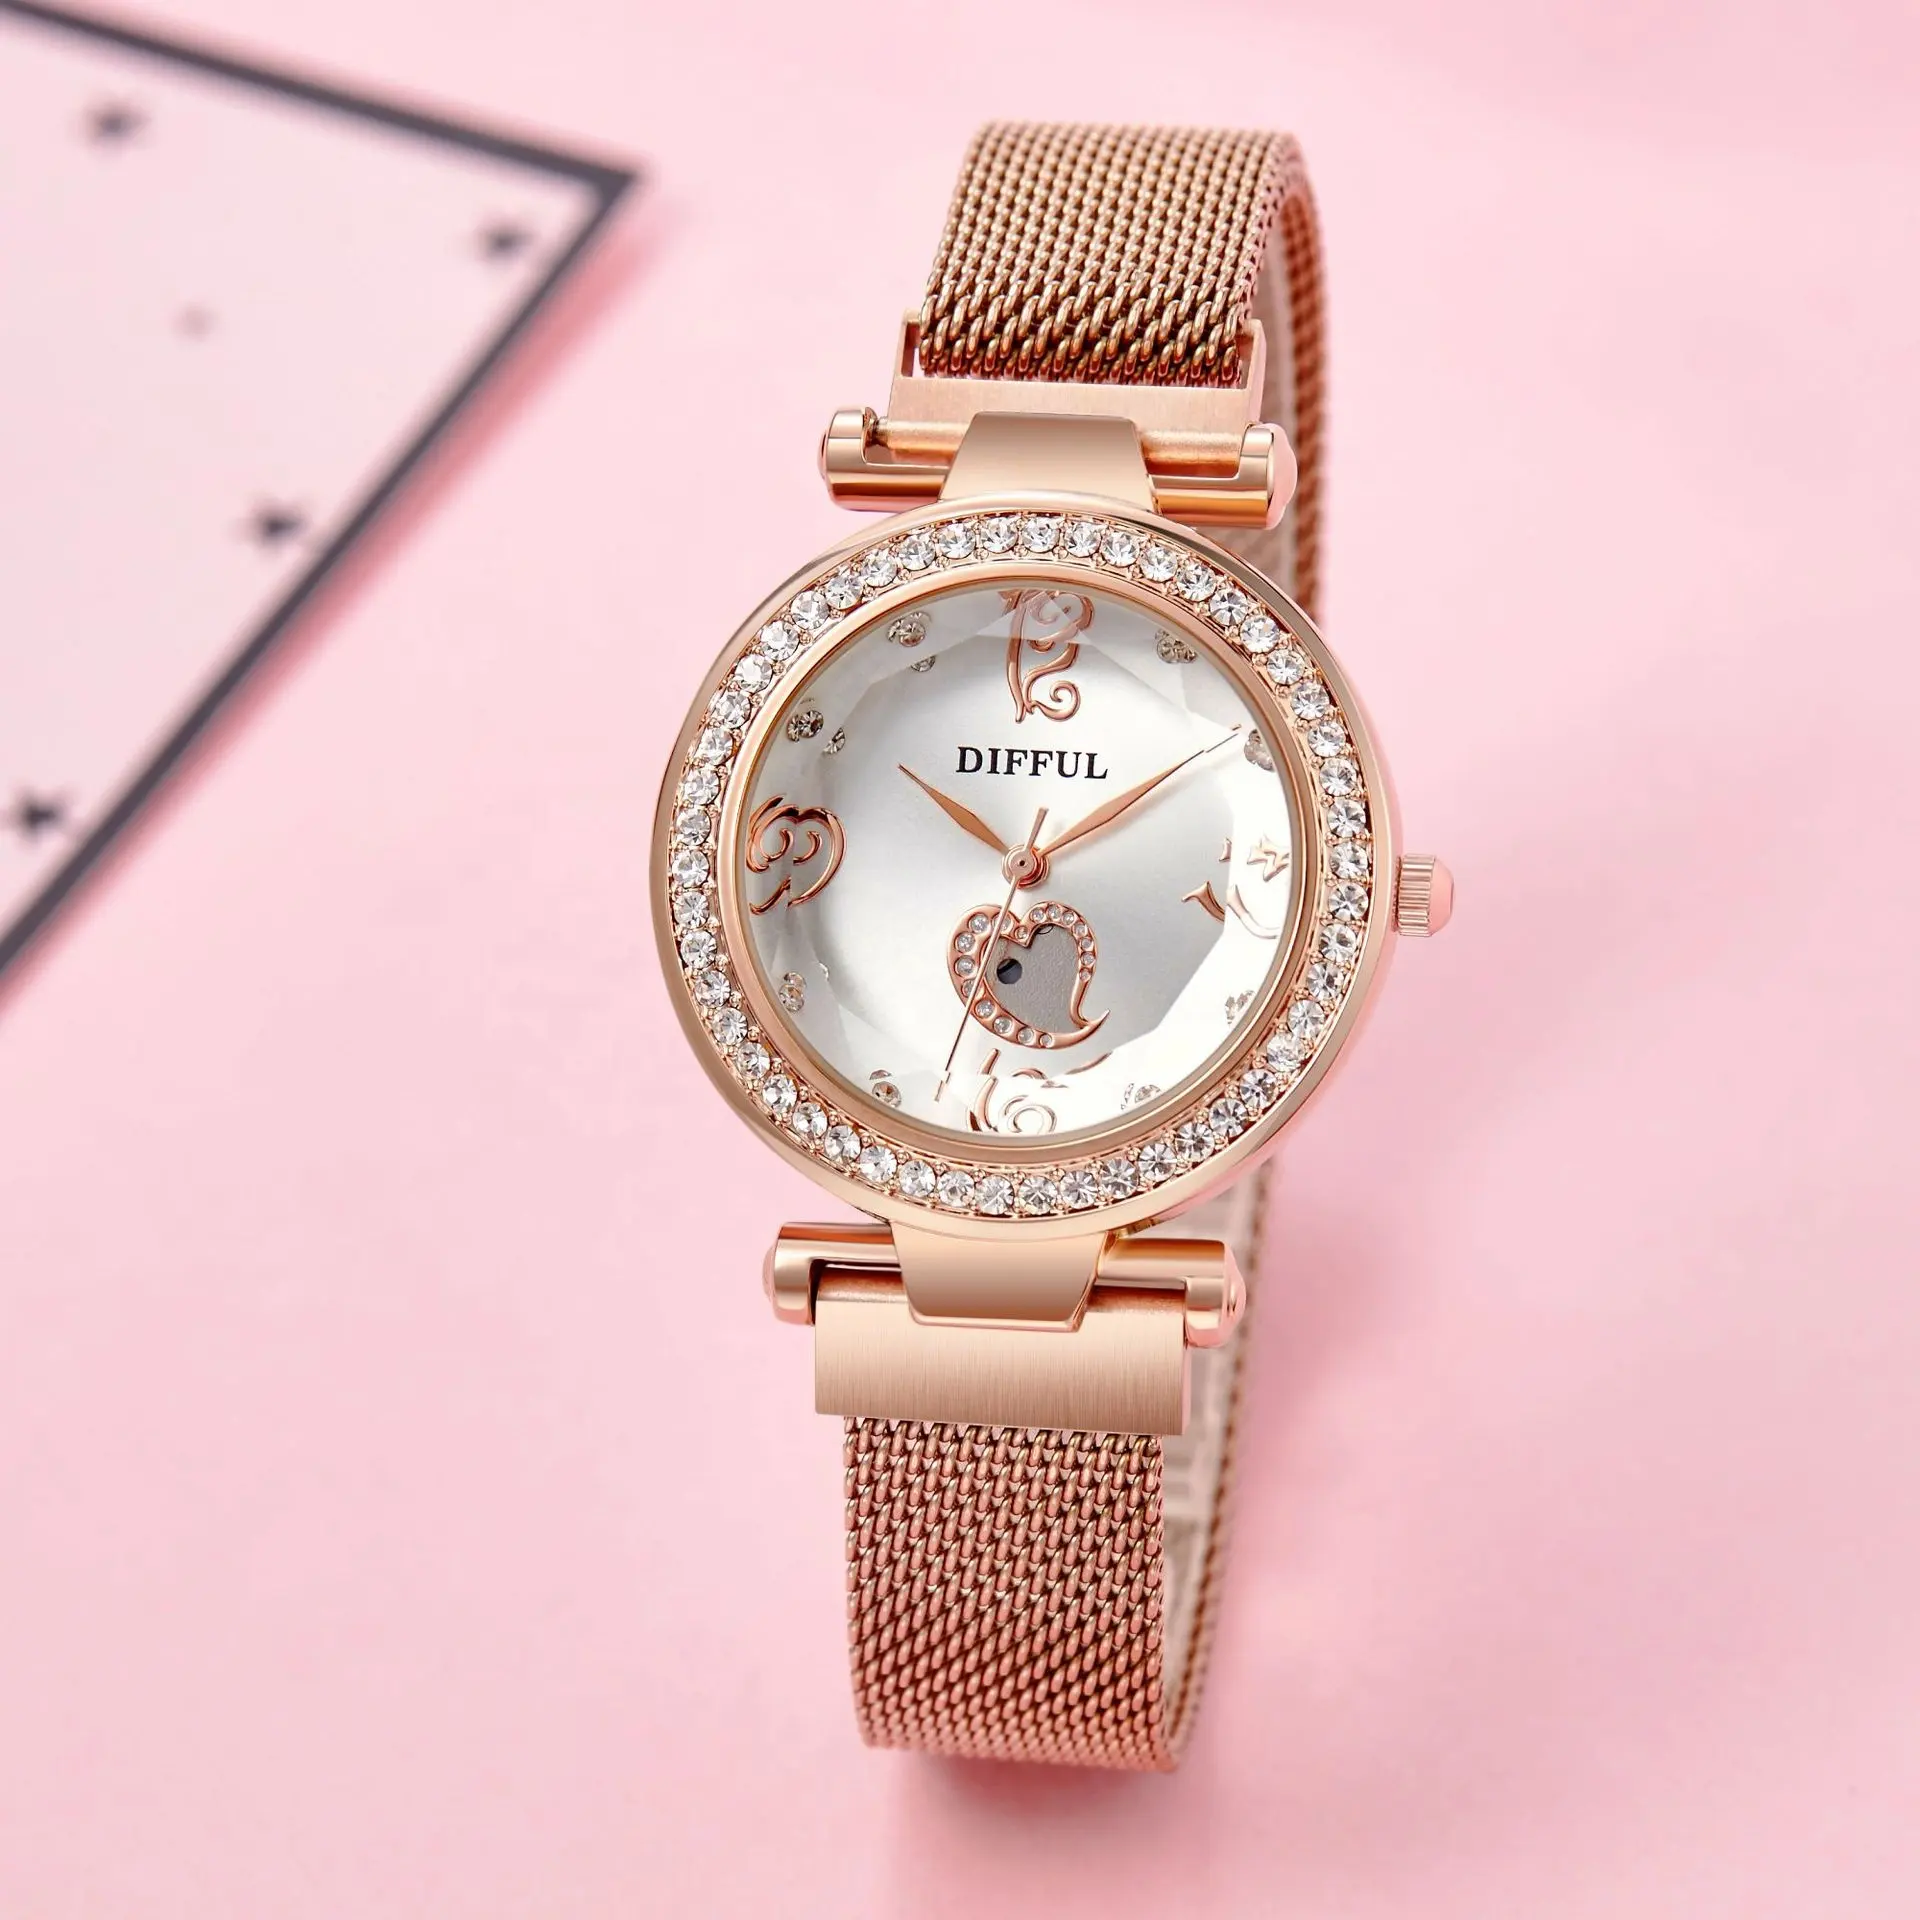 Love Heart Shaped магнитные часы для женщин в виде бриллиантового украшения из розового золота для женщин и девушек, магнит часы